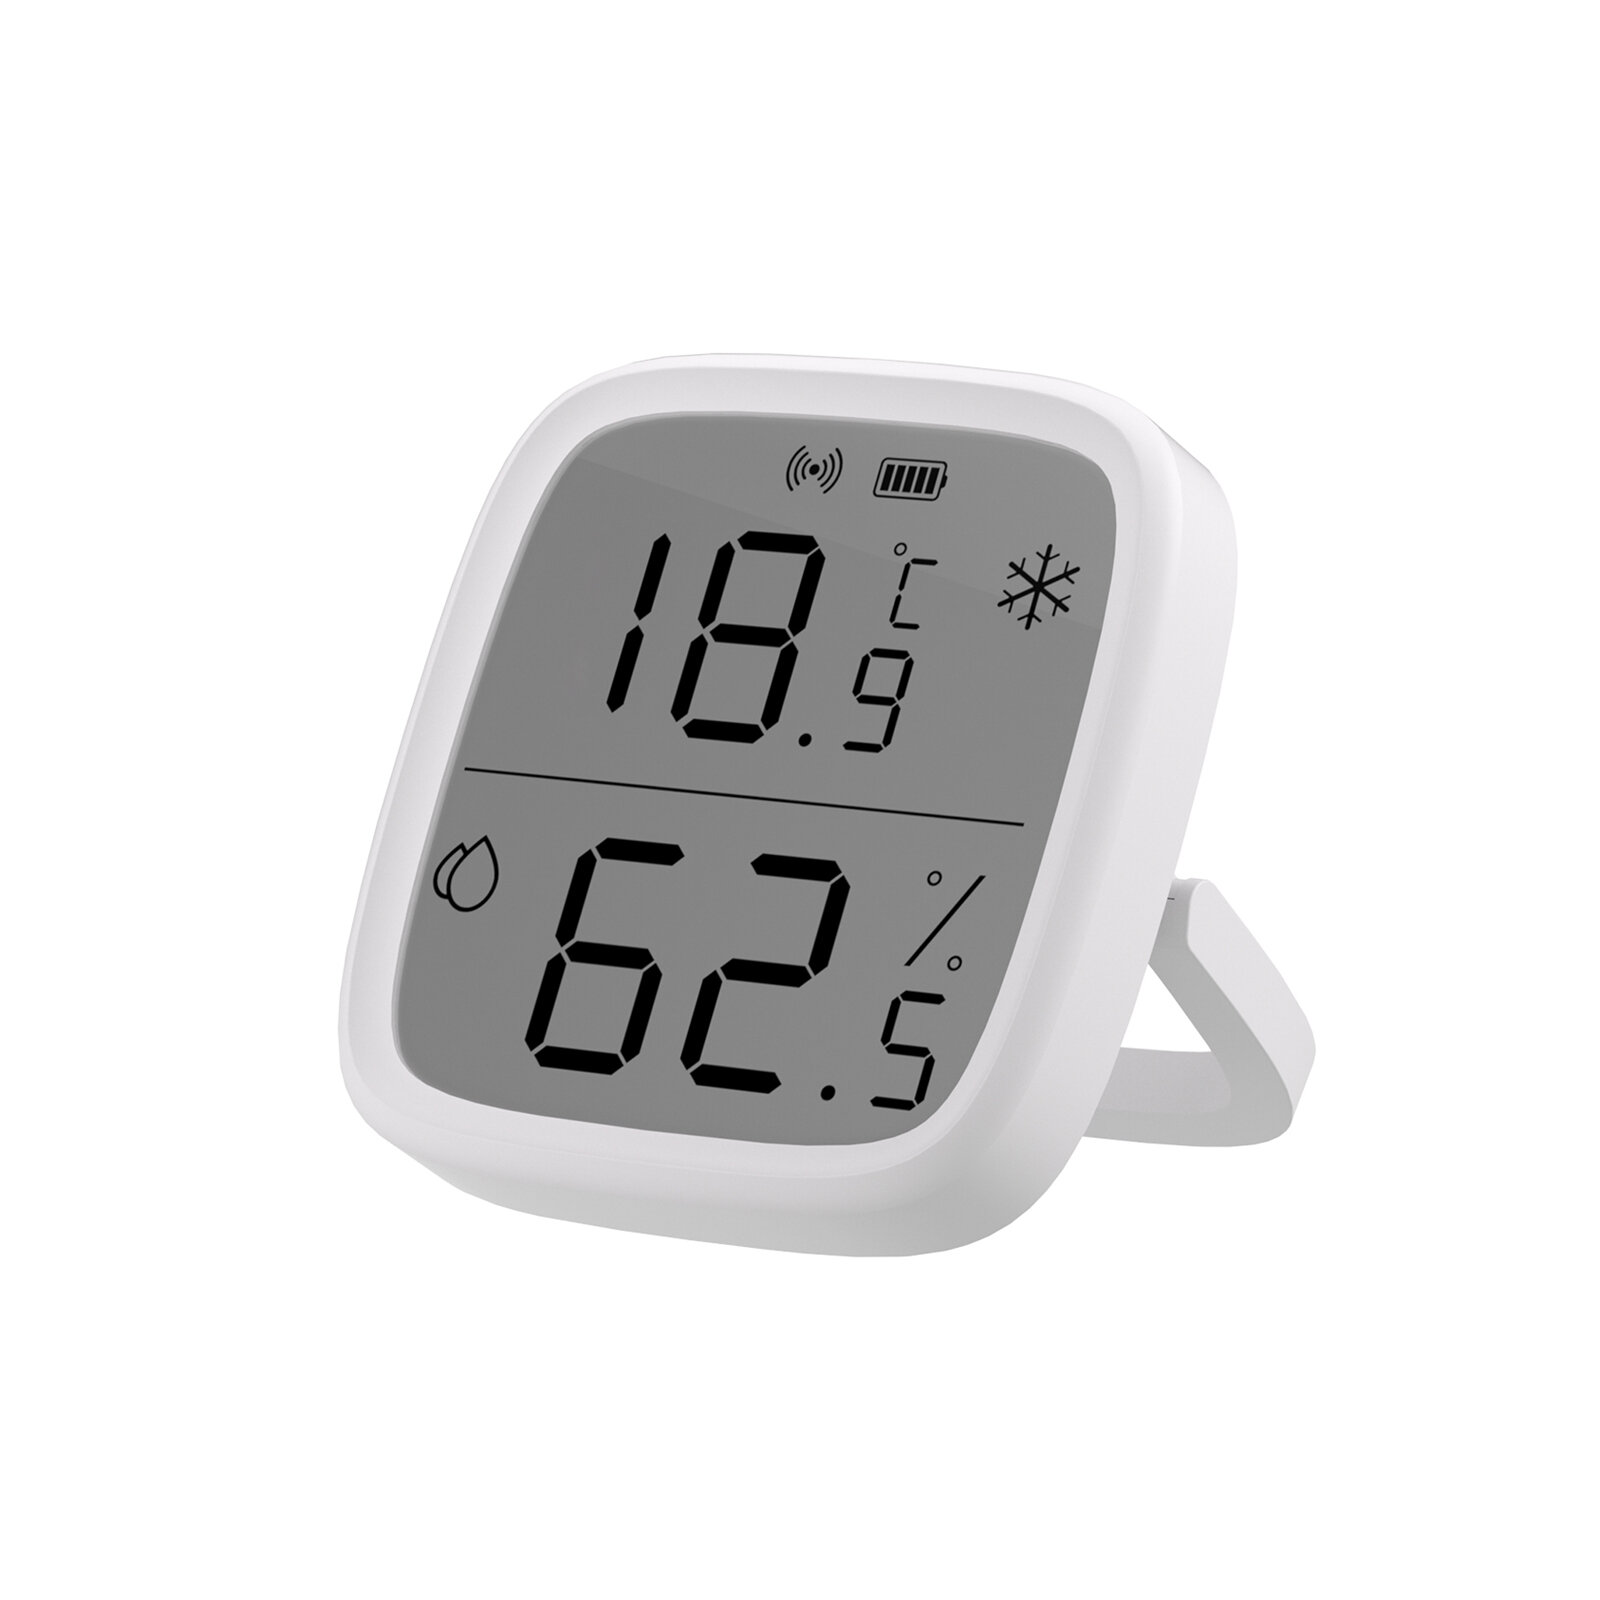 Sensor de temperatura e umidade inteligente com tela LCD SONOFF SNZB-02D. Monitoramento em tempo real pelo aplicativo. F